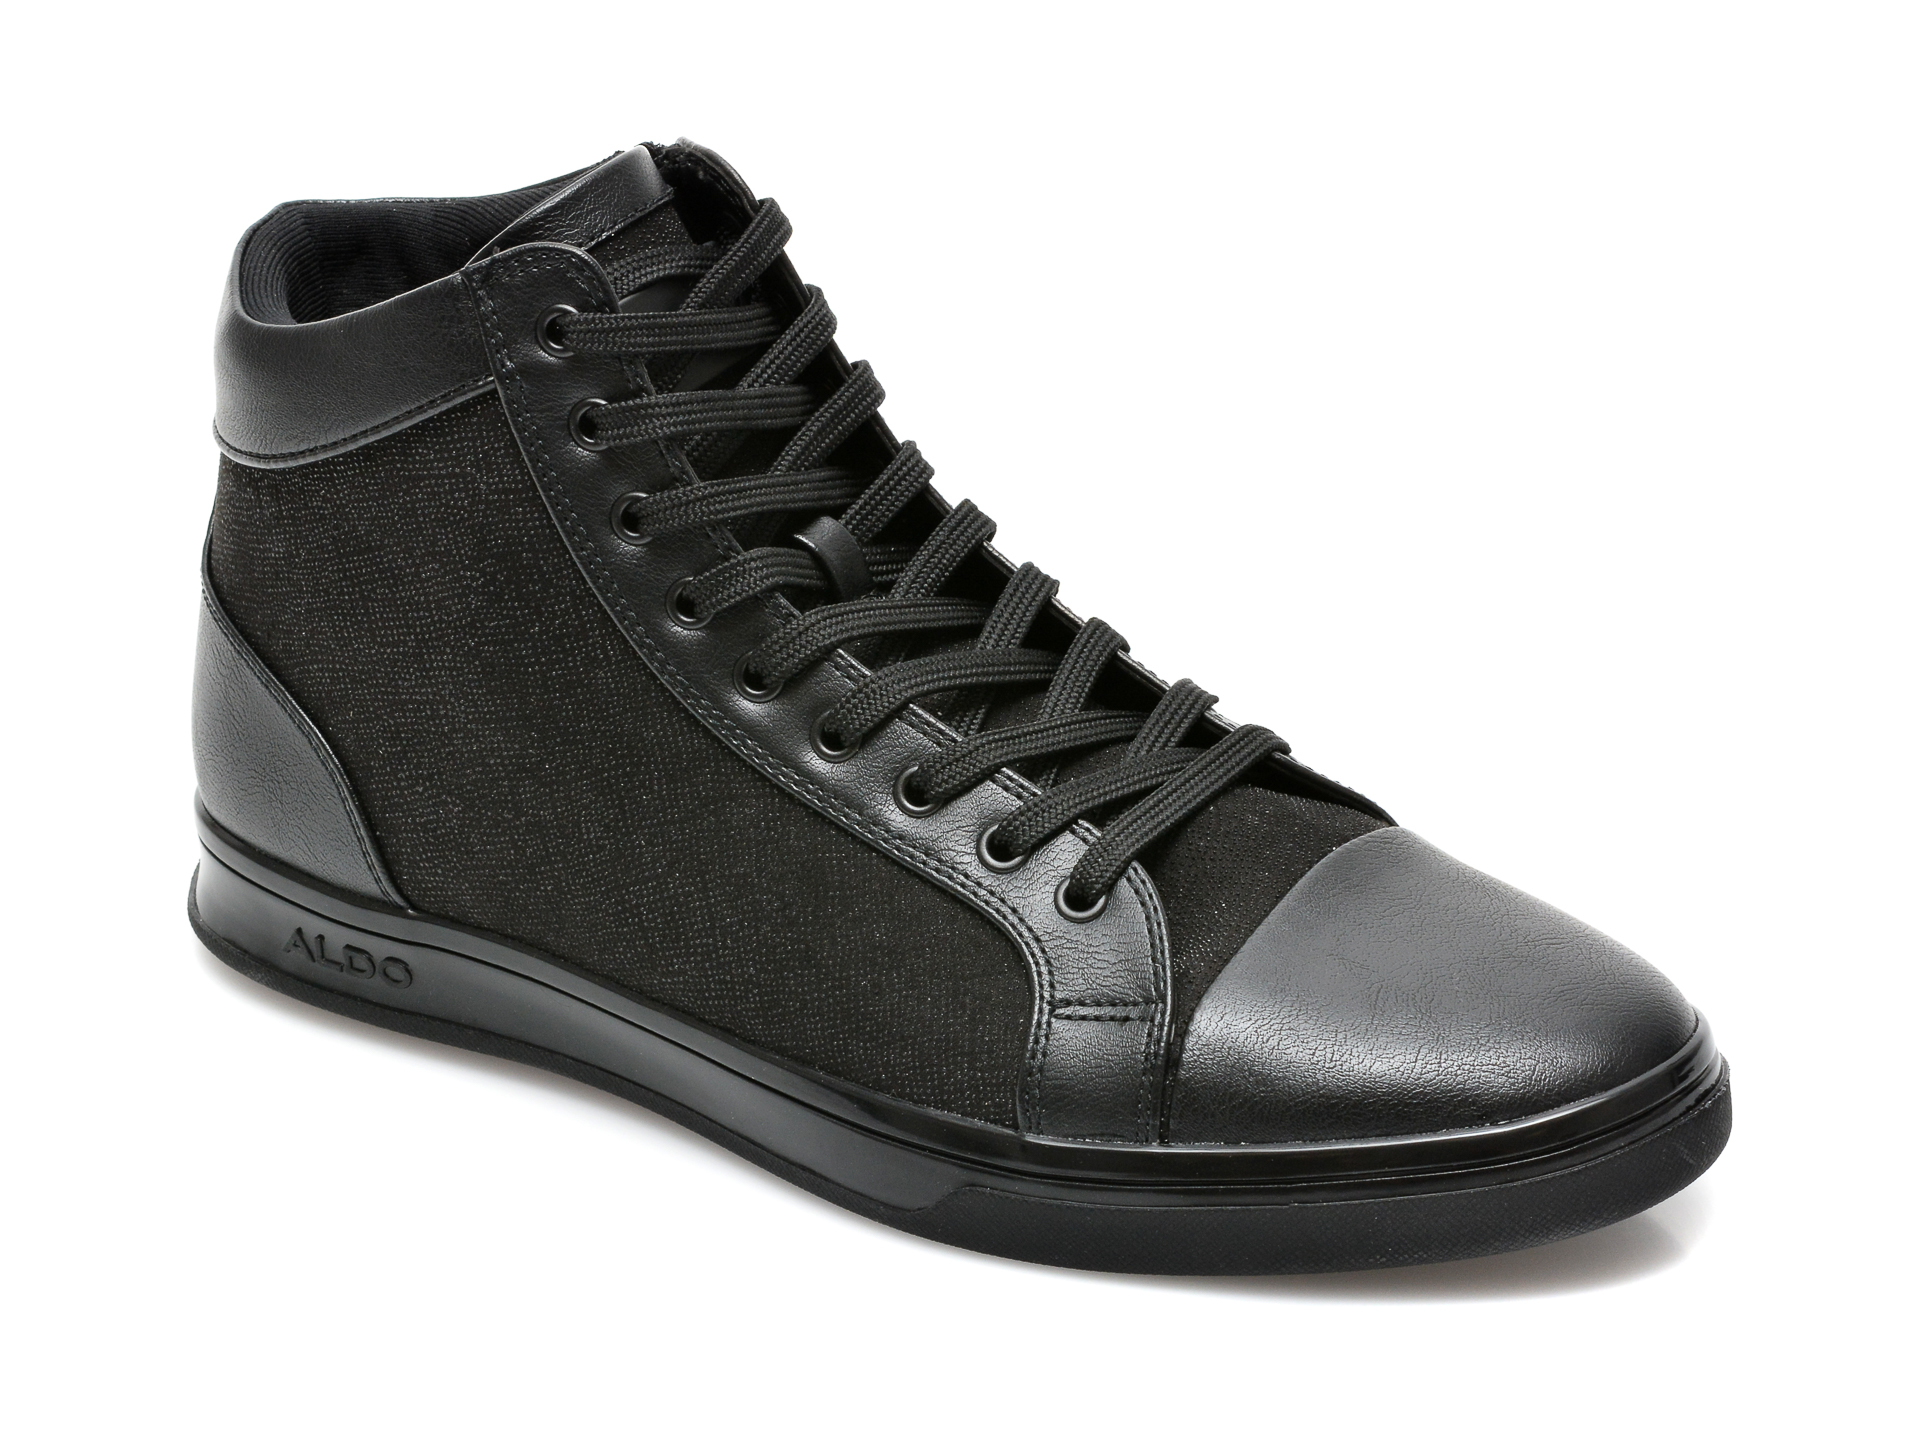 Pantofi ALDO negri, Senaniel001, din material textil si piele ecologica Aldo Aldo